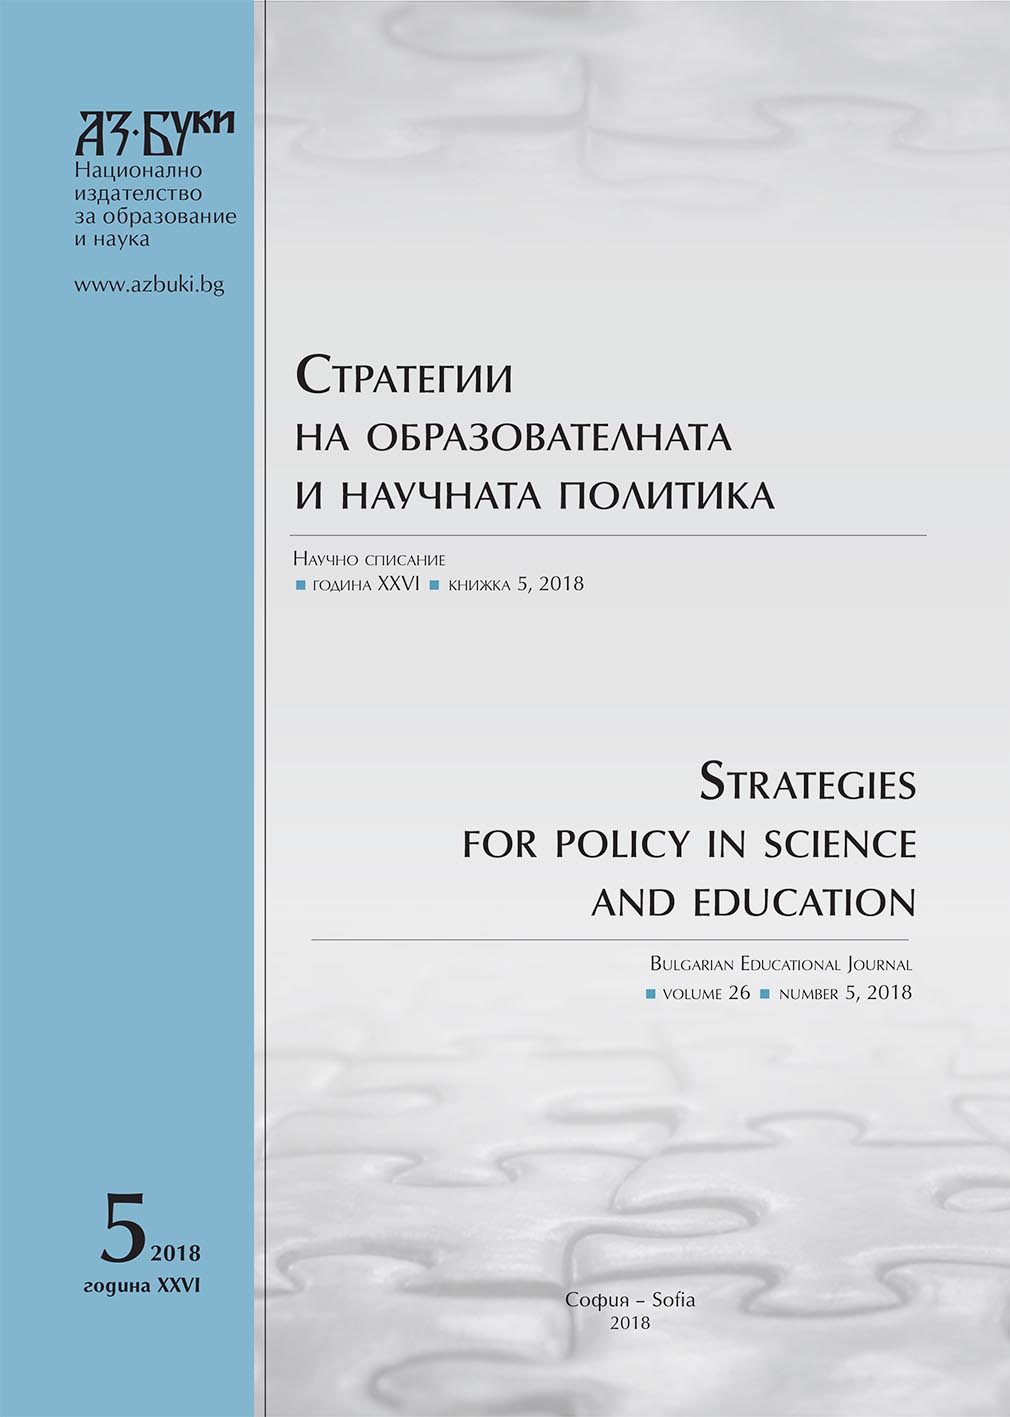 Проектът „Руски индекс за научно цитиране“ и българските изследователи